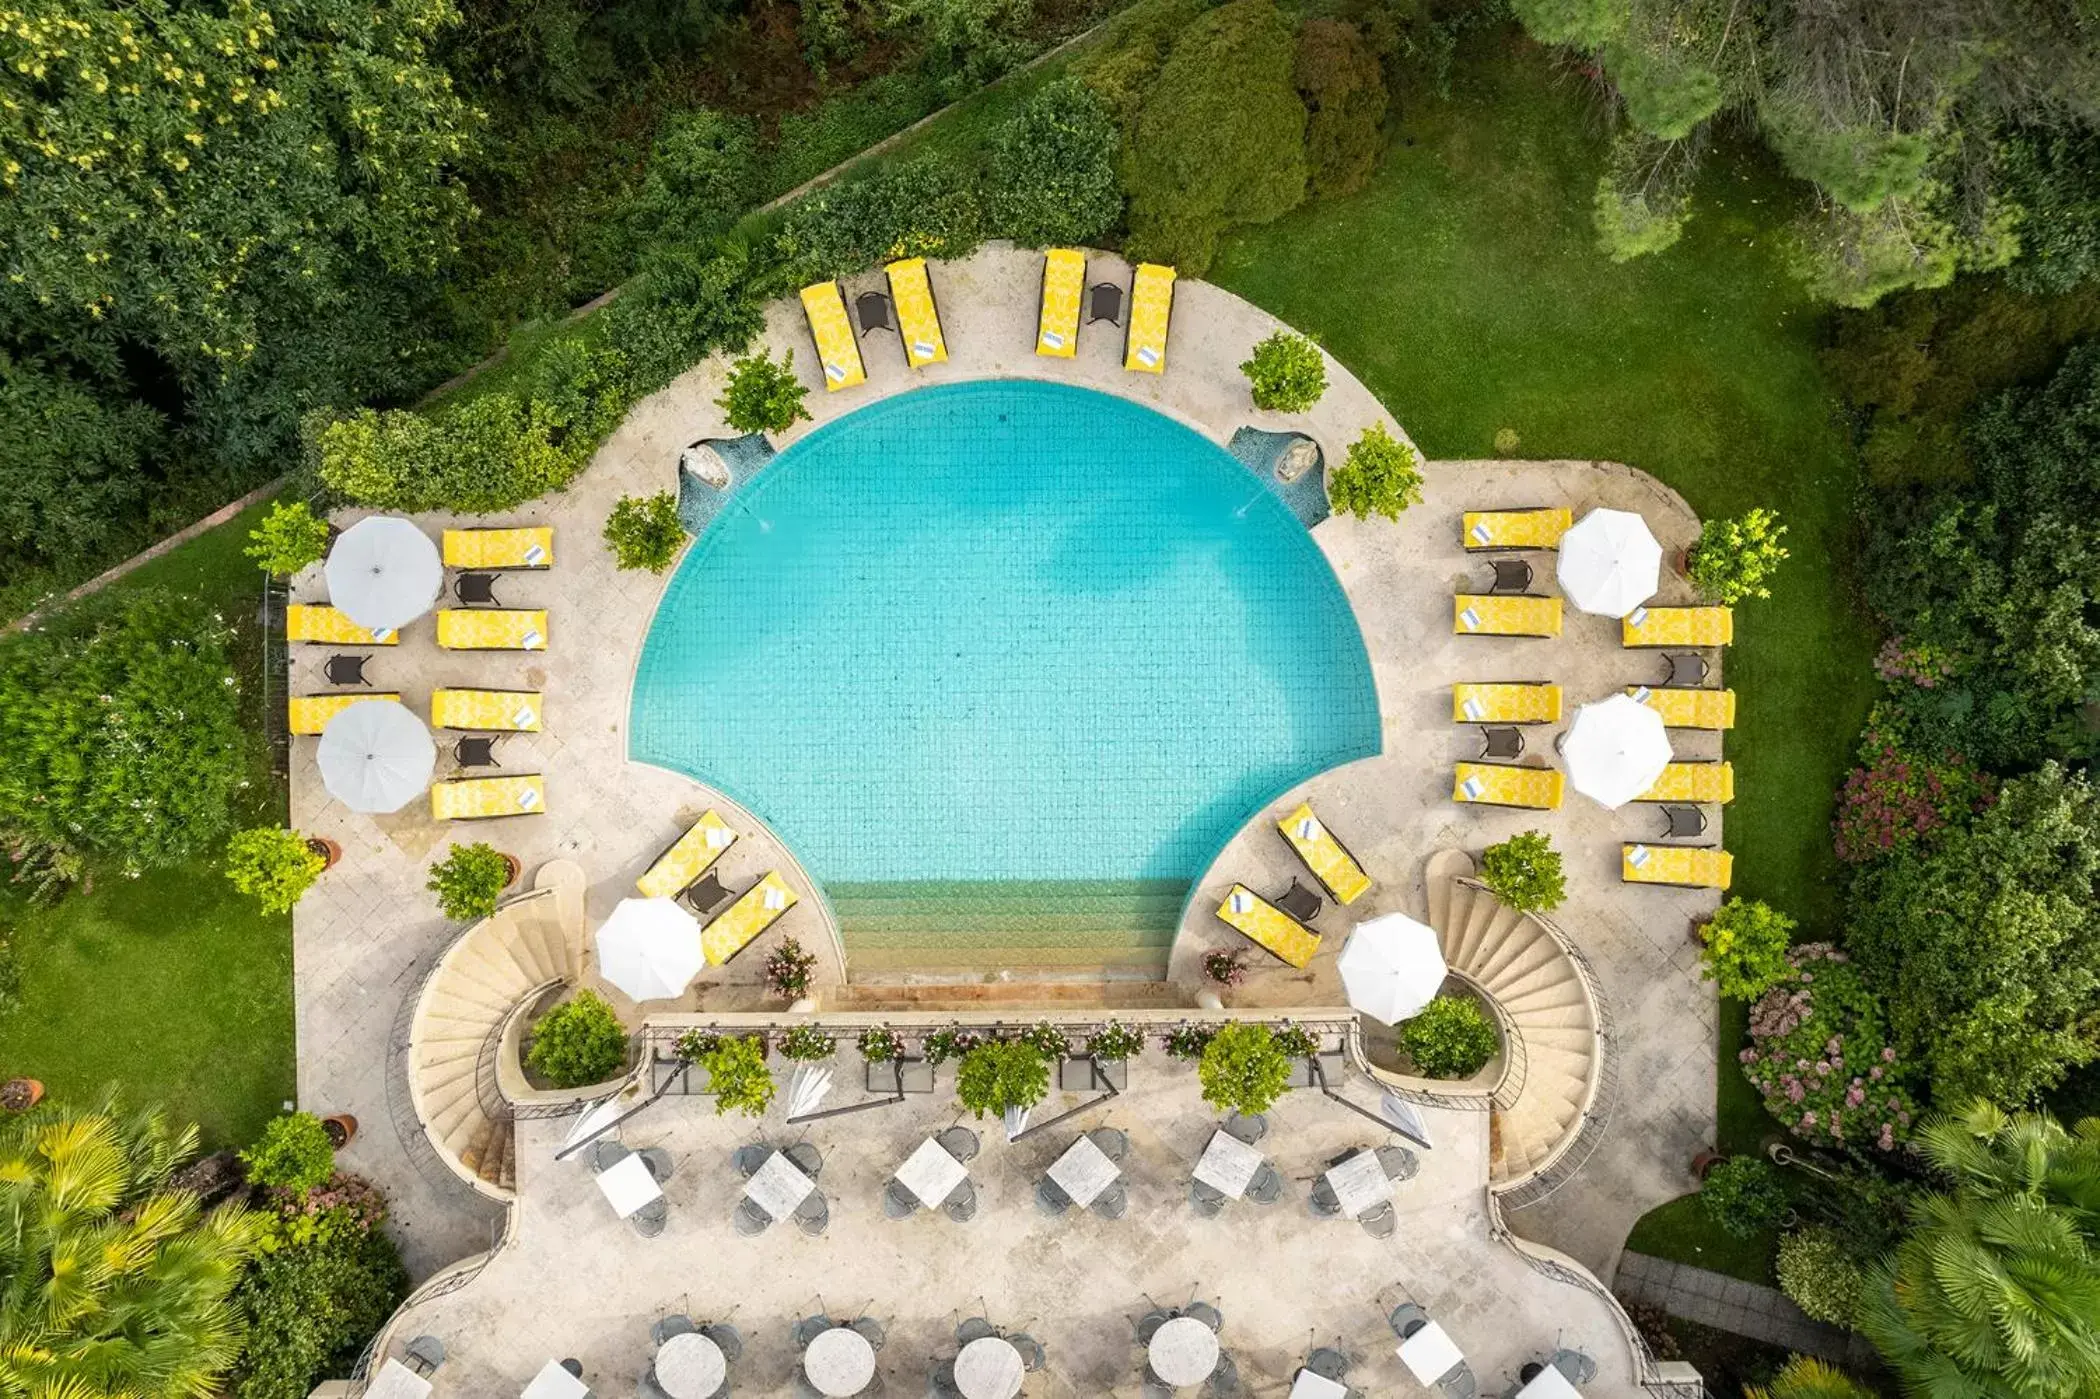 Pool View in Villa Principe Leopoldo - Ticino Hotels Group